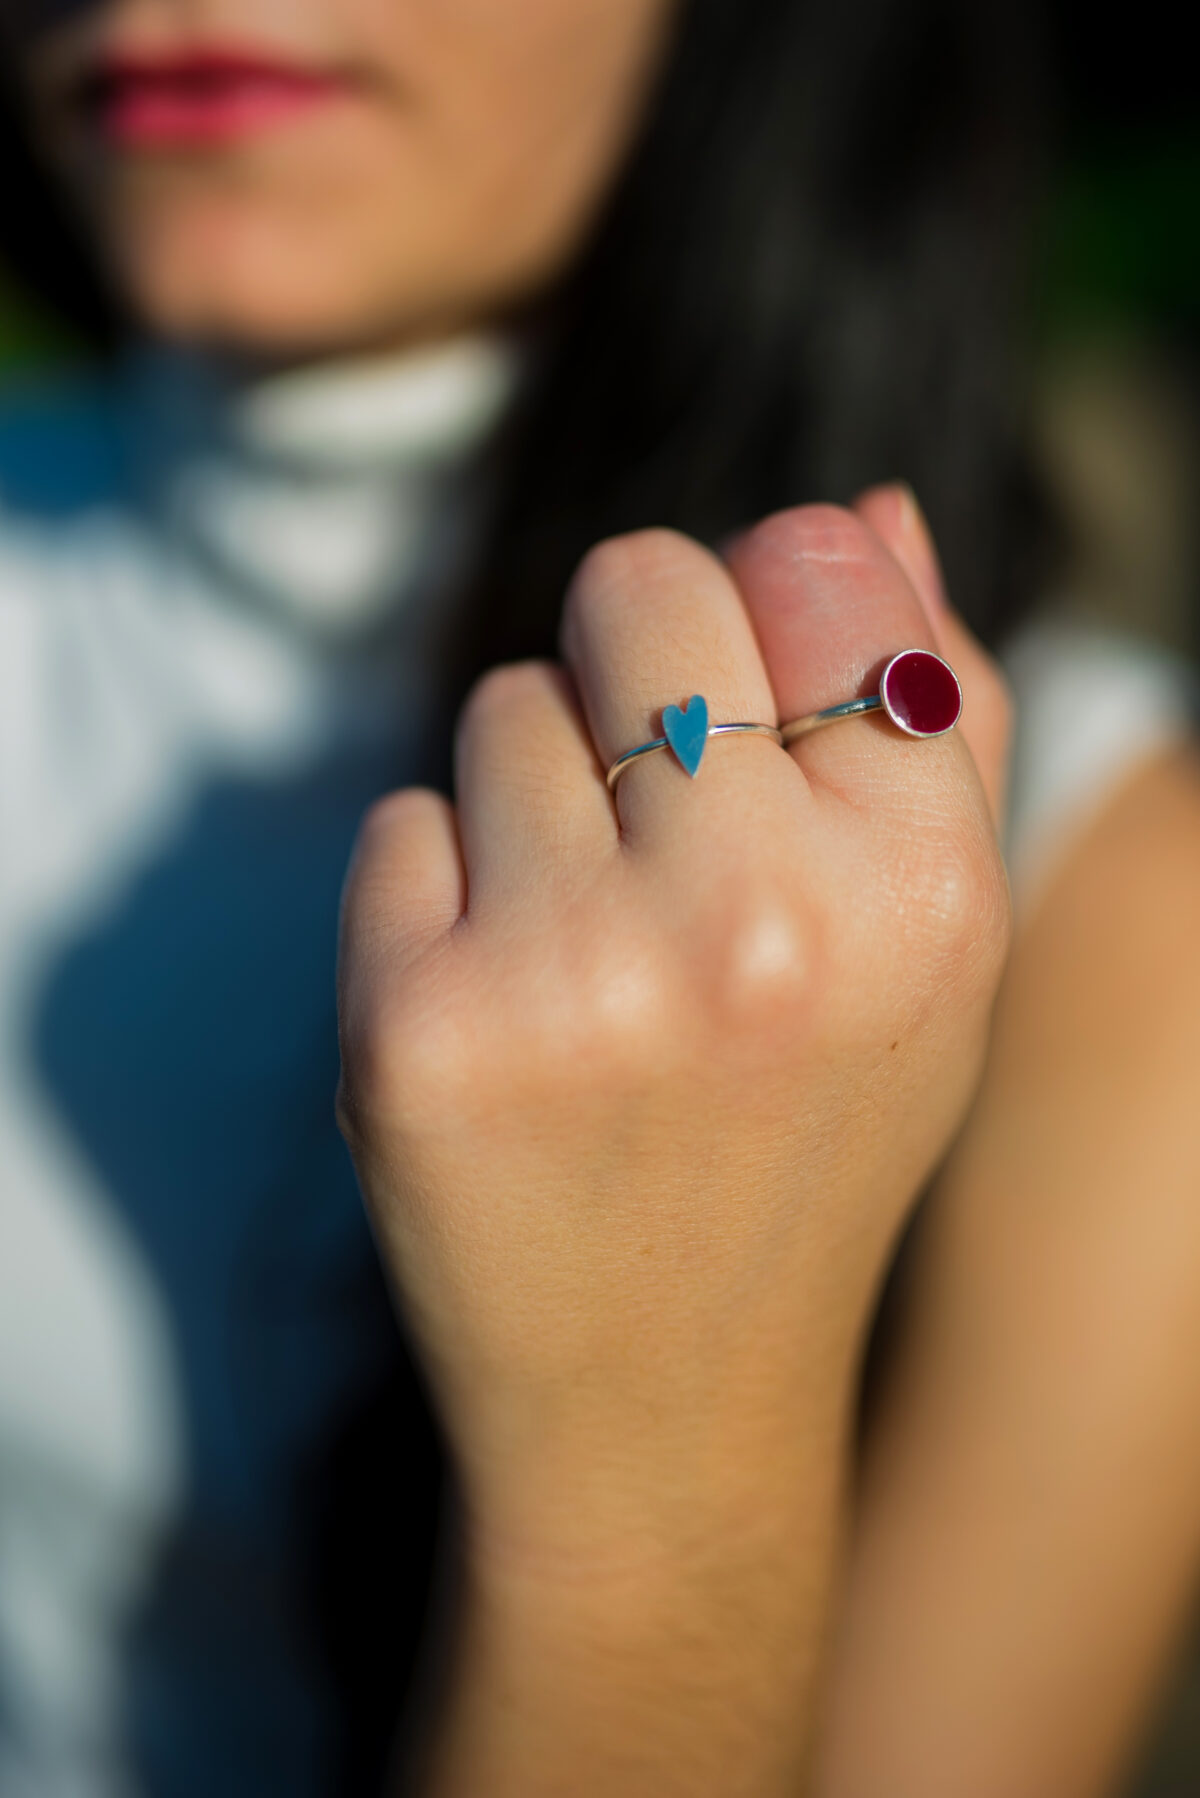 “Αγάπη” ασημένιο δαχτυλίδι “Αγάπη” ασημένιο δαχτυλίδι “Αγάπη” ασημένιο δαχτυλίδι 6